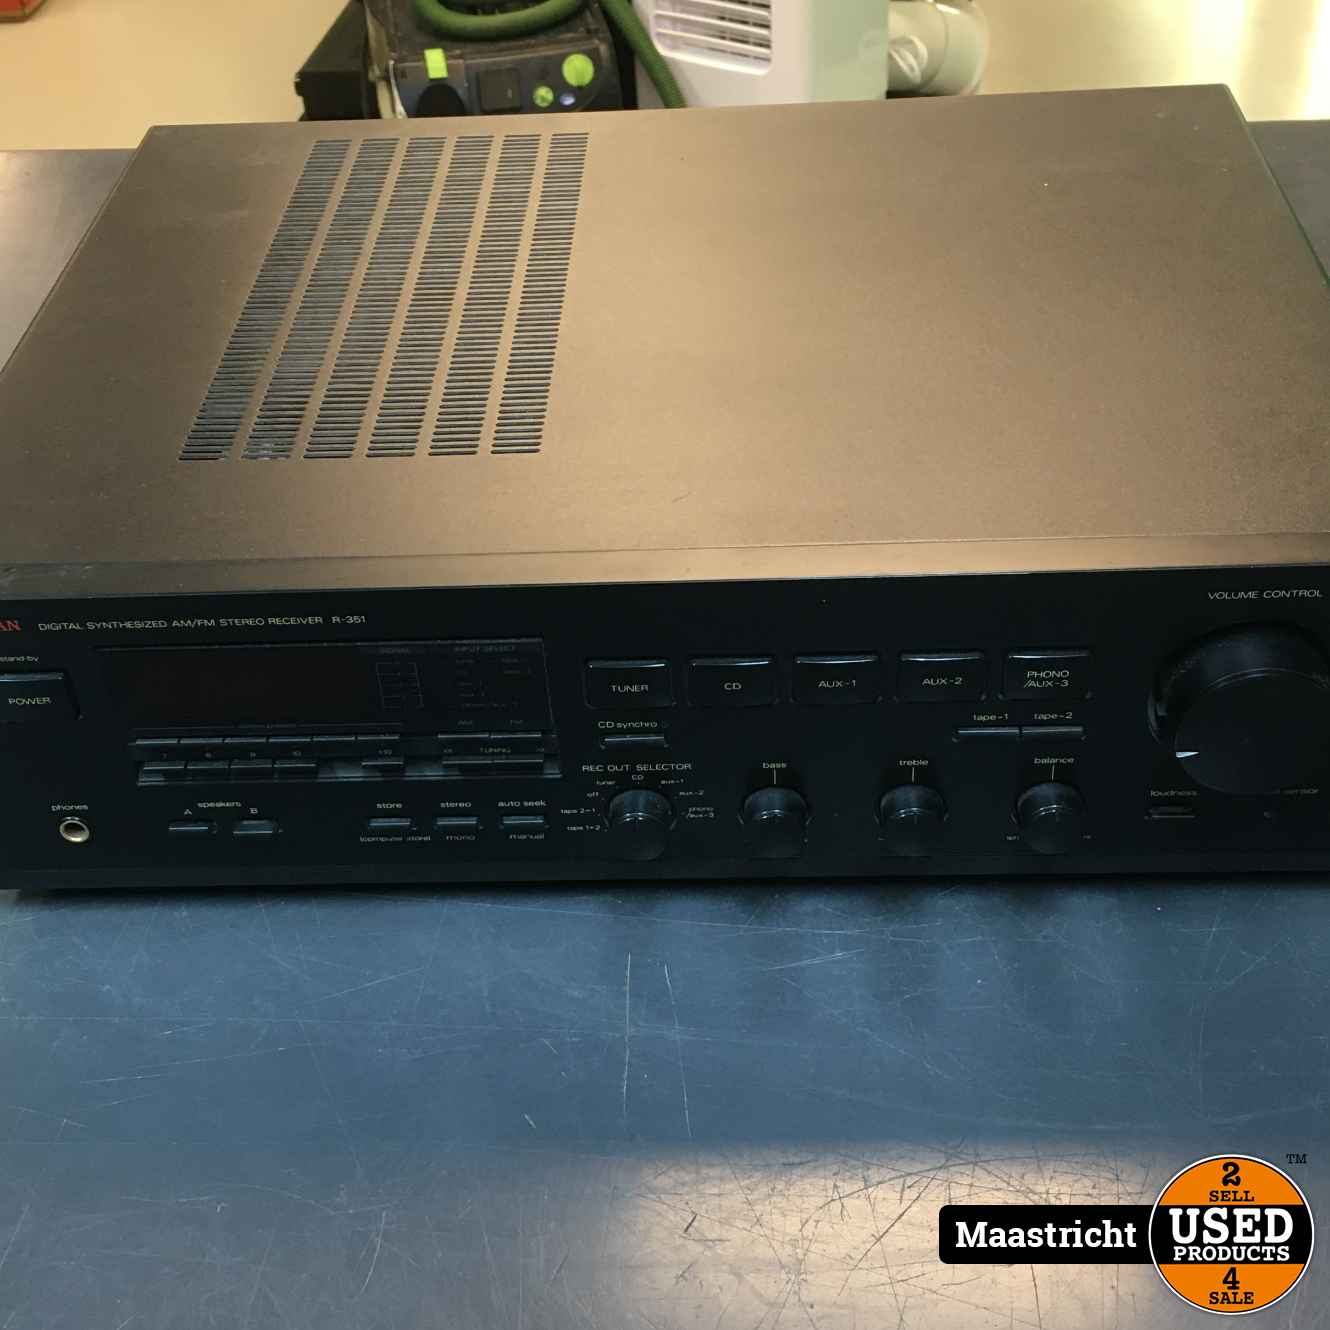 Uitscheiden Feodaal video Technics SU-V6X vintage stereo versterker in topstaat (met MM / MC phono) -  Used Products Maastricht